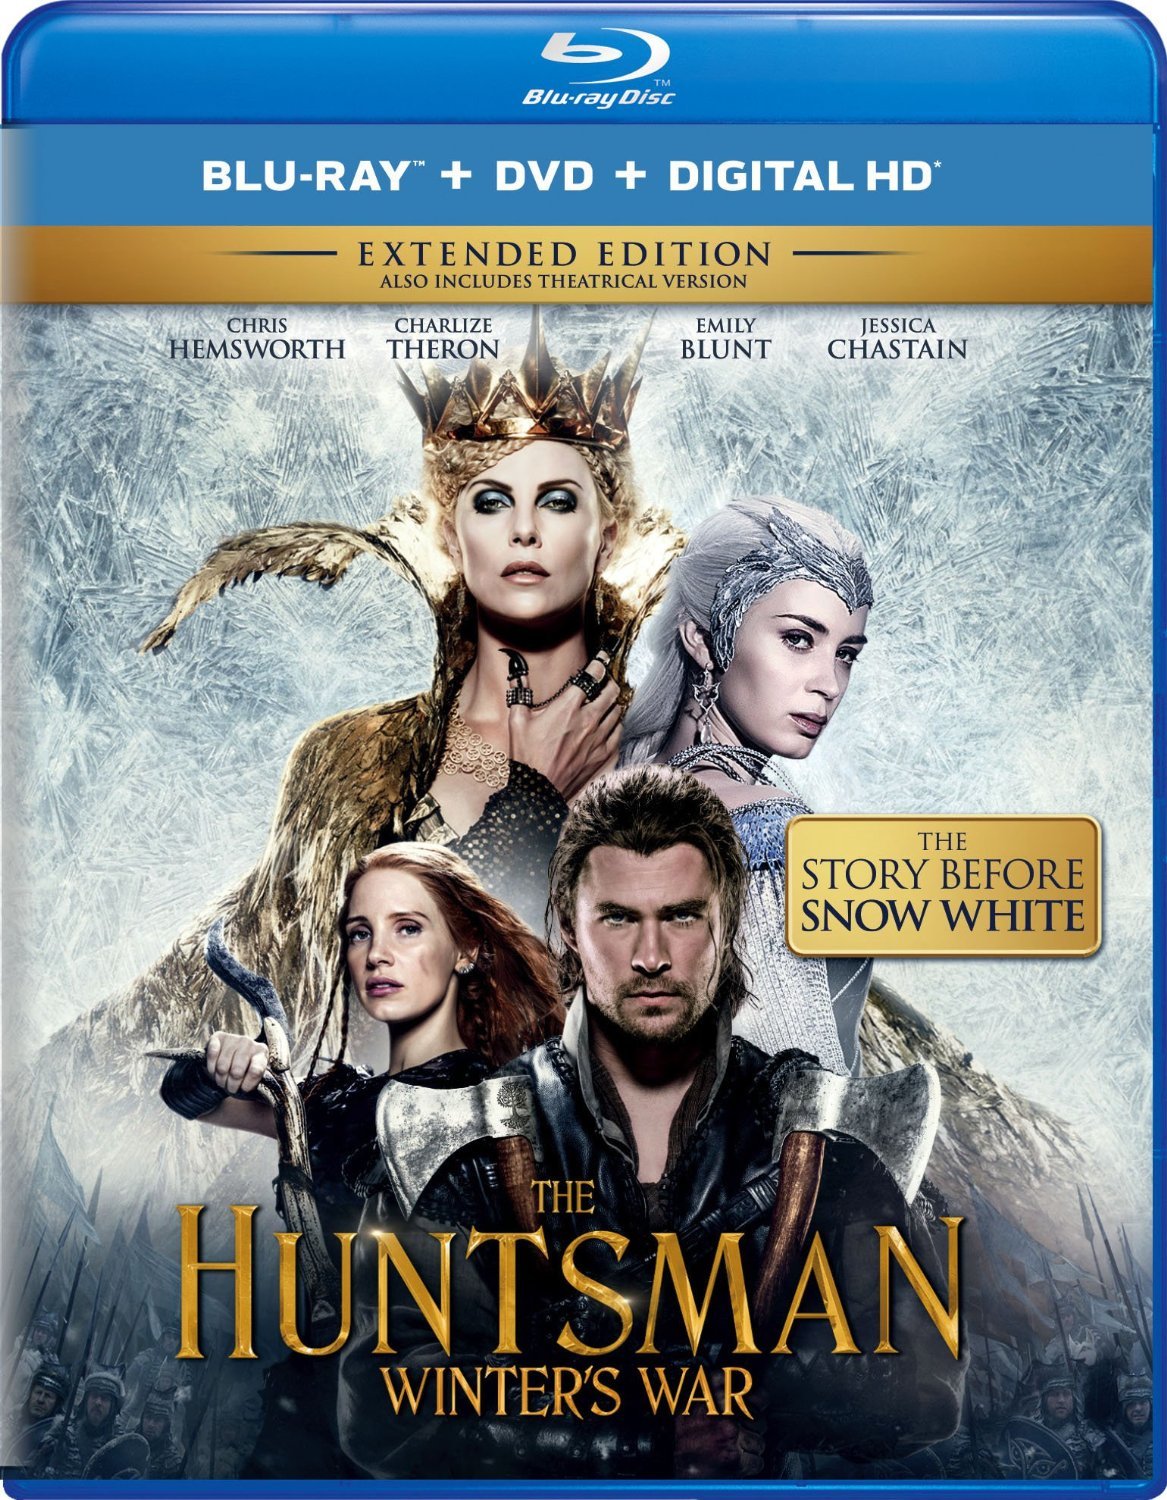 [猎神·冬日之战].The.Huntsman.Winters.War.2016.TW.2D.2in1.BluRay.1080p.AVC.DTS-X.7.1-TTG   44.83G-2.jpg